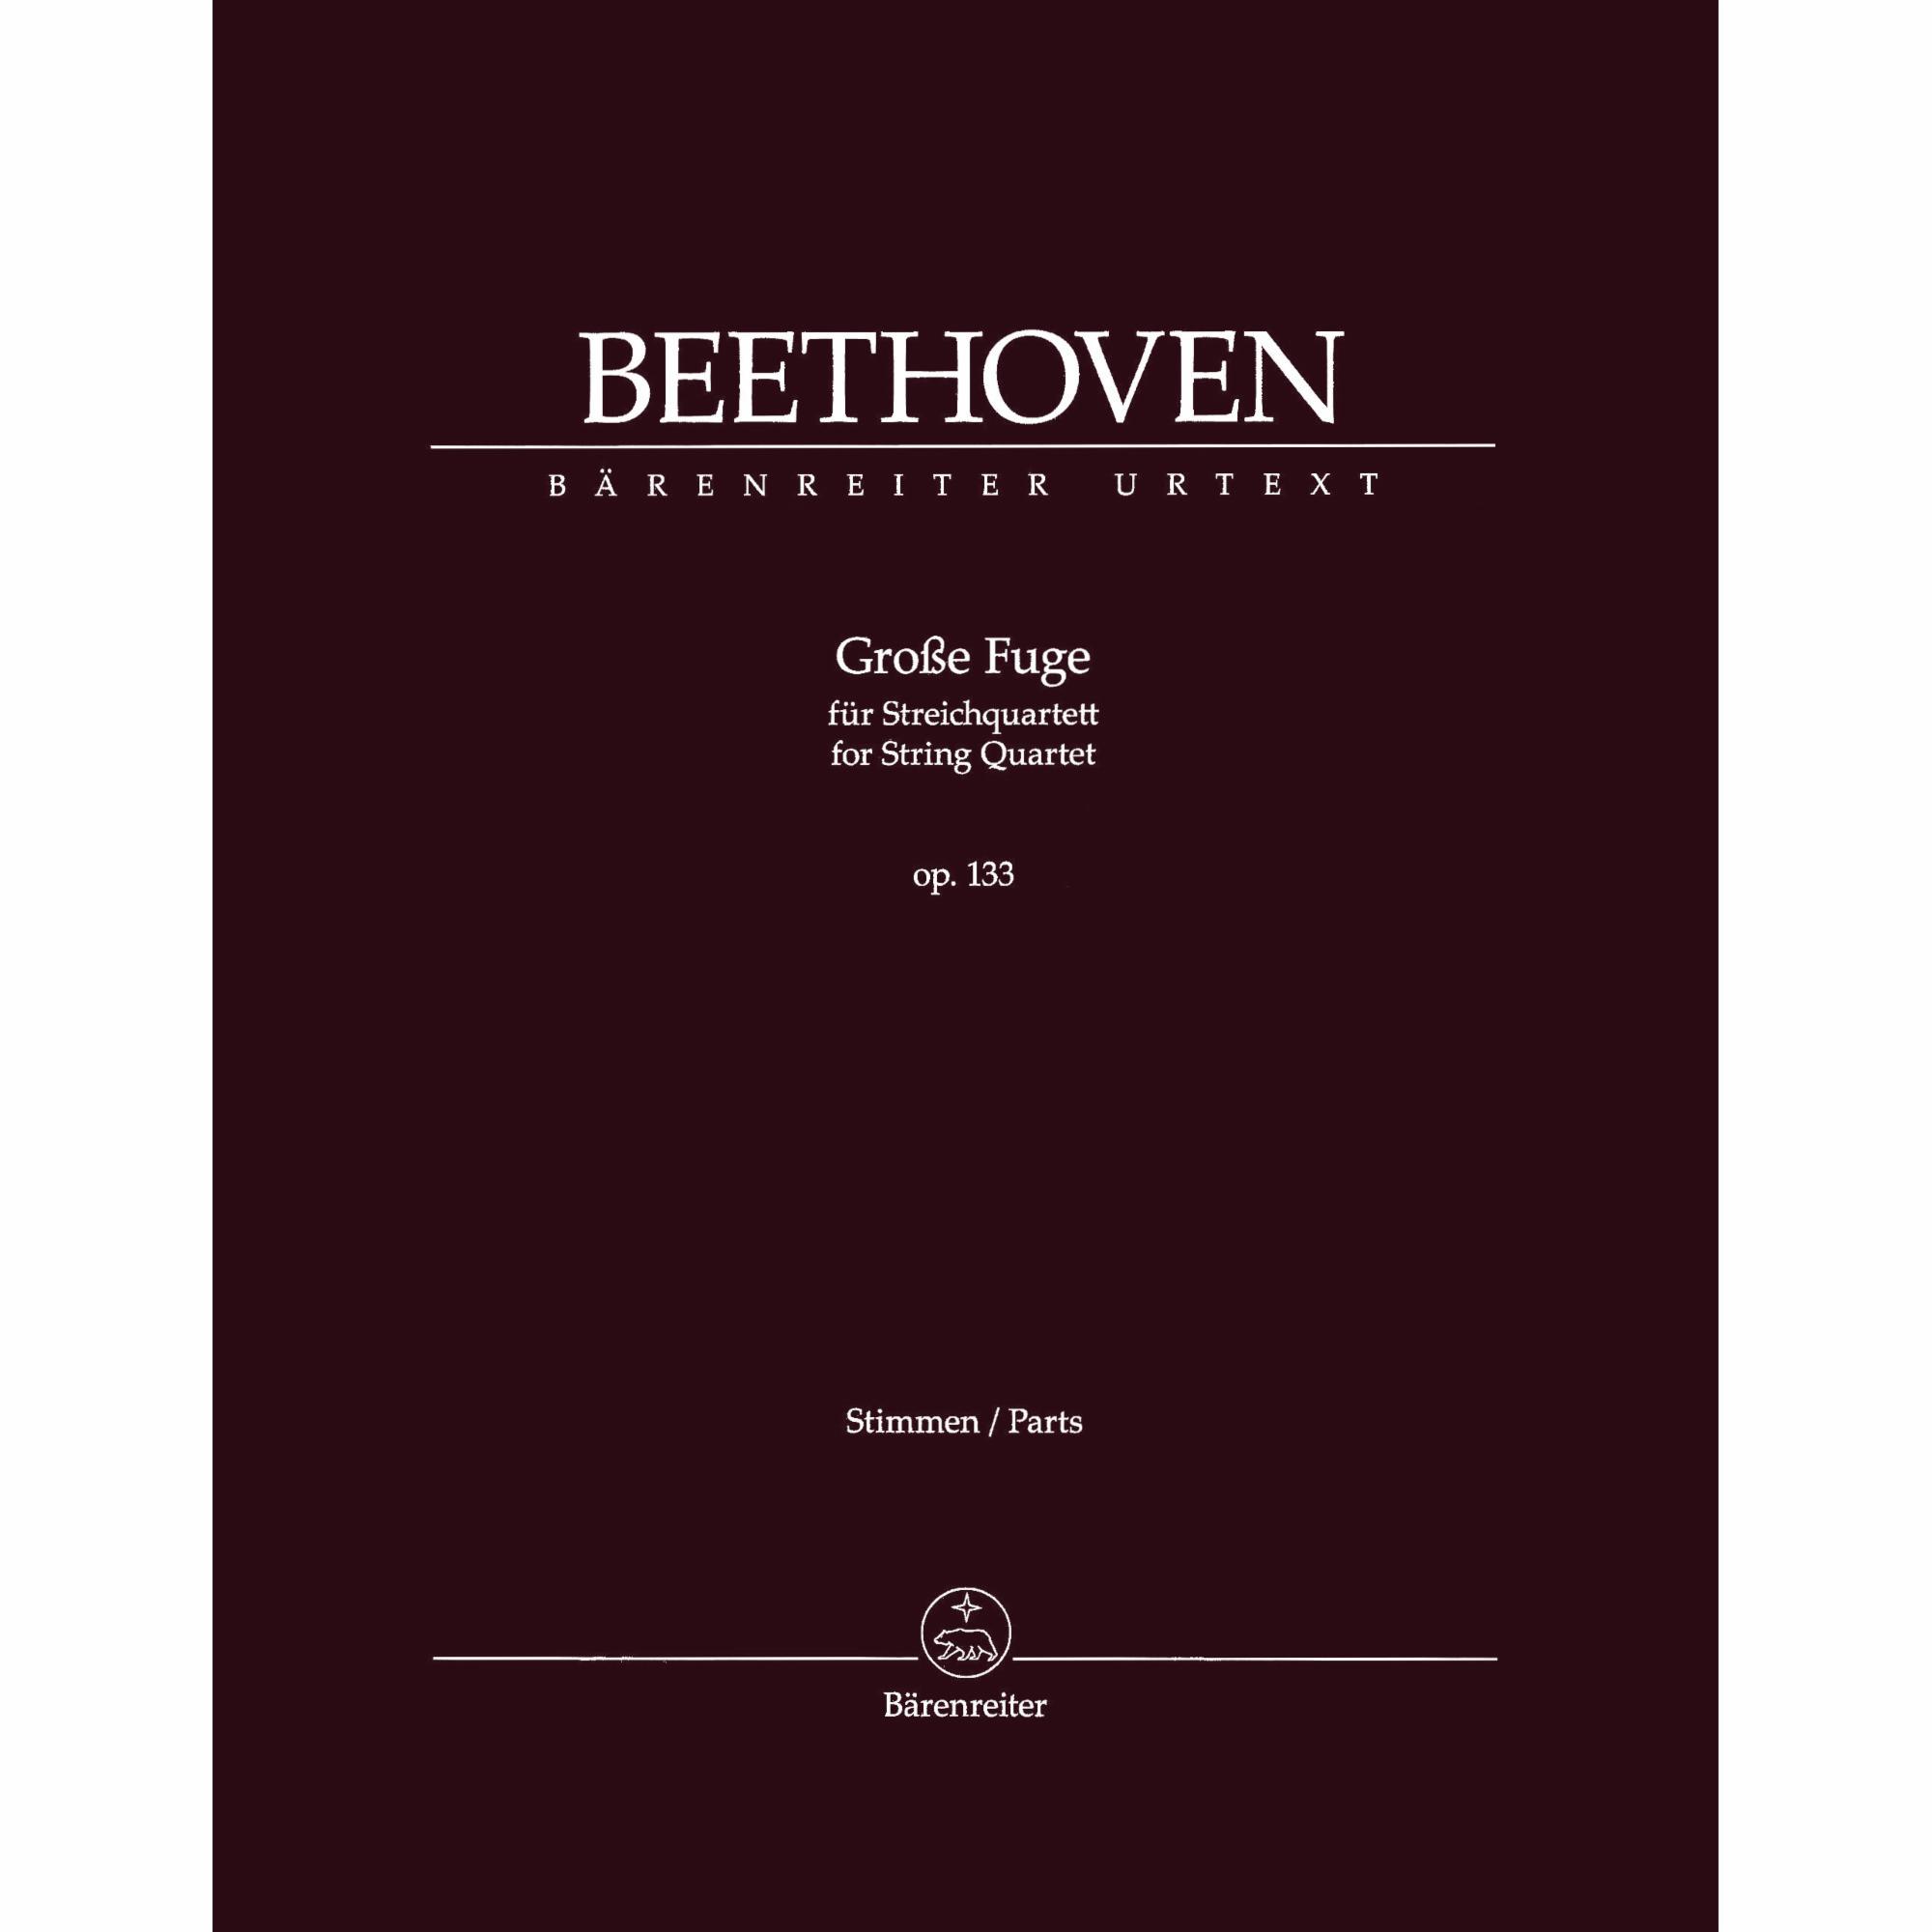 Beethoven -- Grosse Fuge, Op. 133 for String Quartet